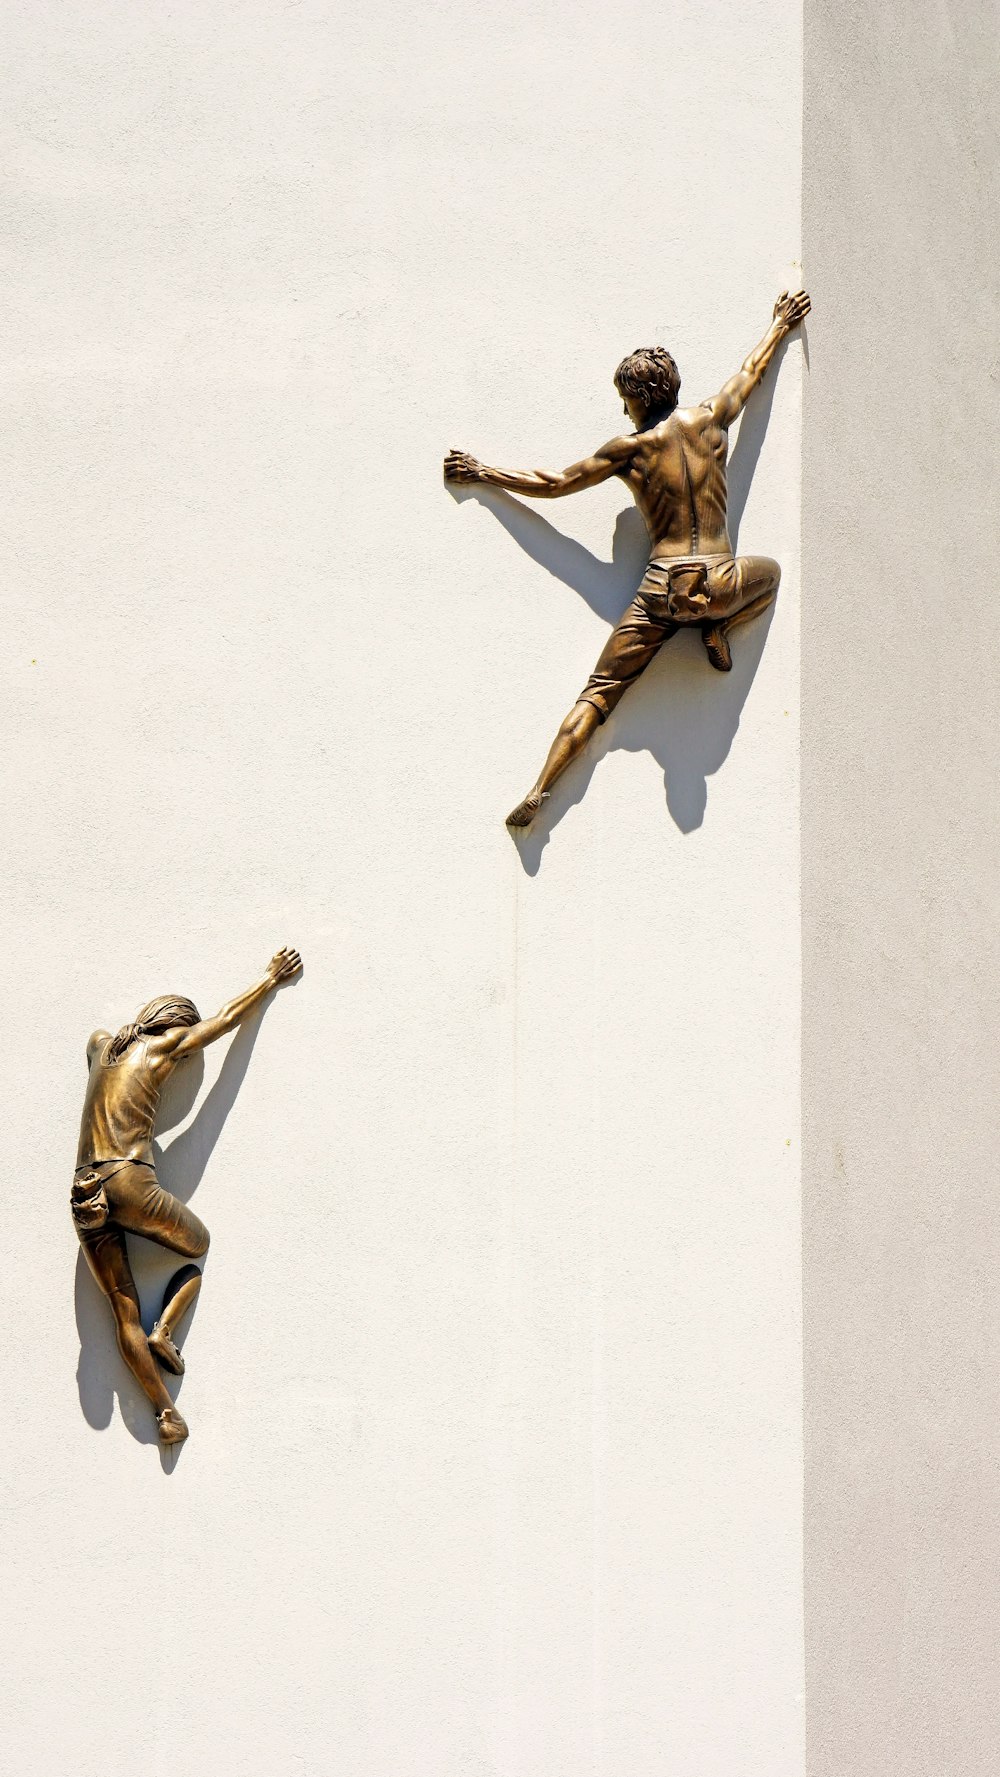 brass statues of men climbing